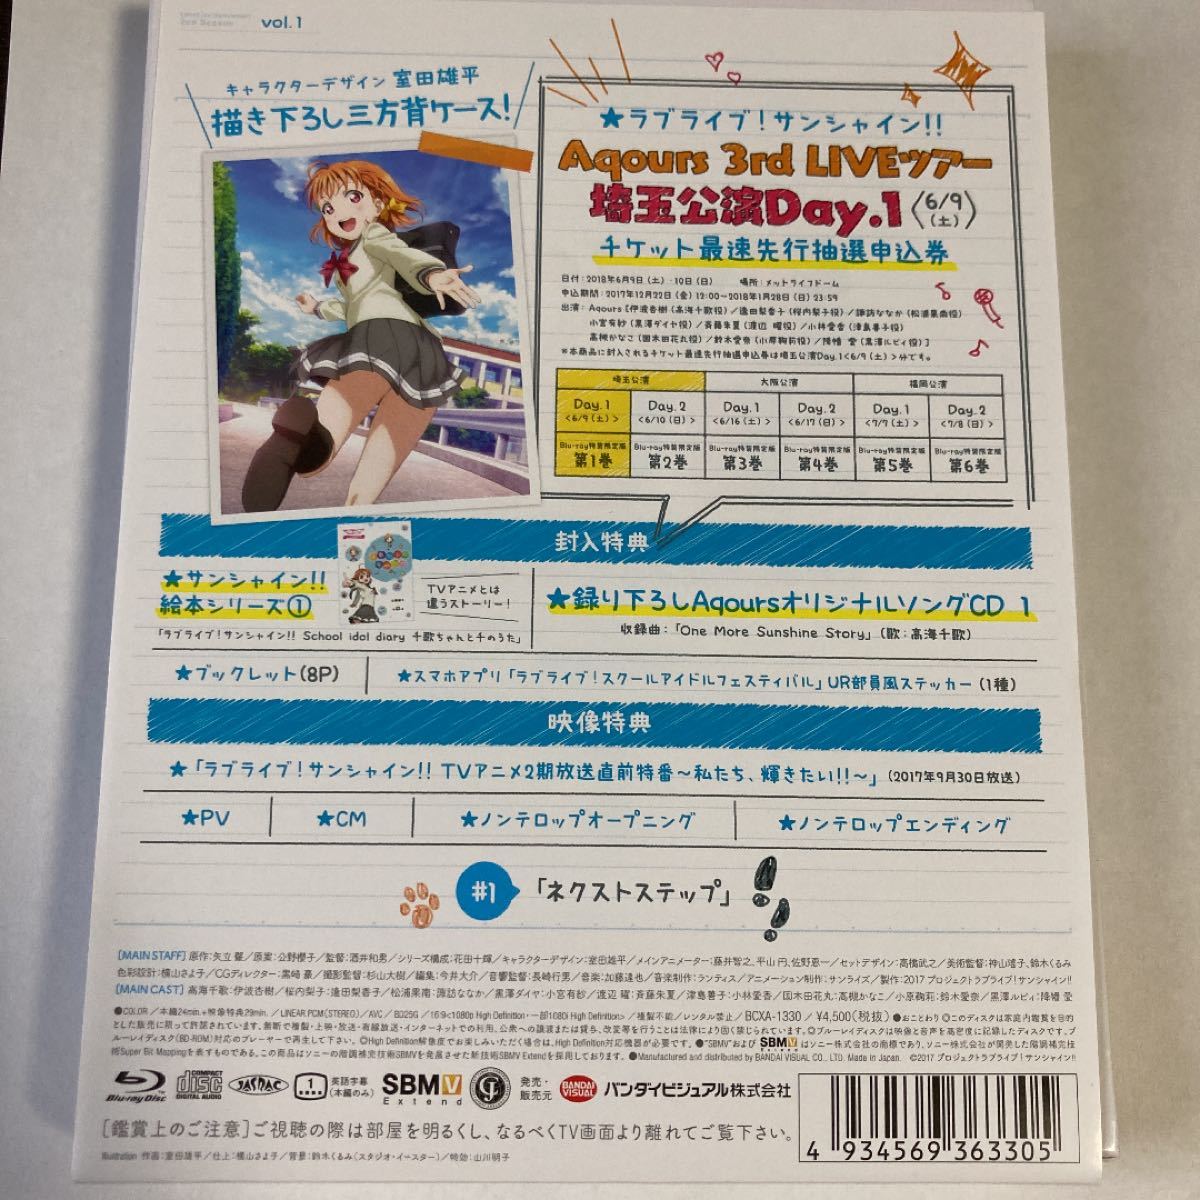 ラブライブ! サンシャイン!! 2nd Season Blu-ray 1 (特装限定版)